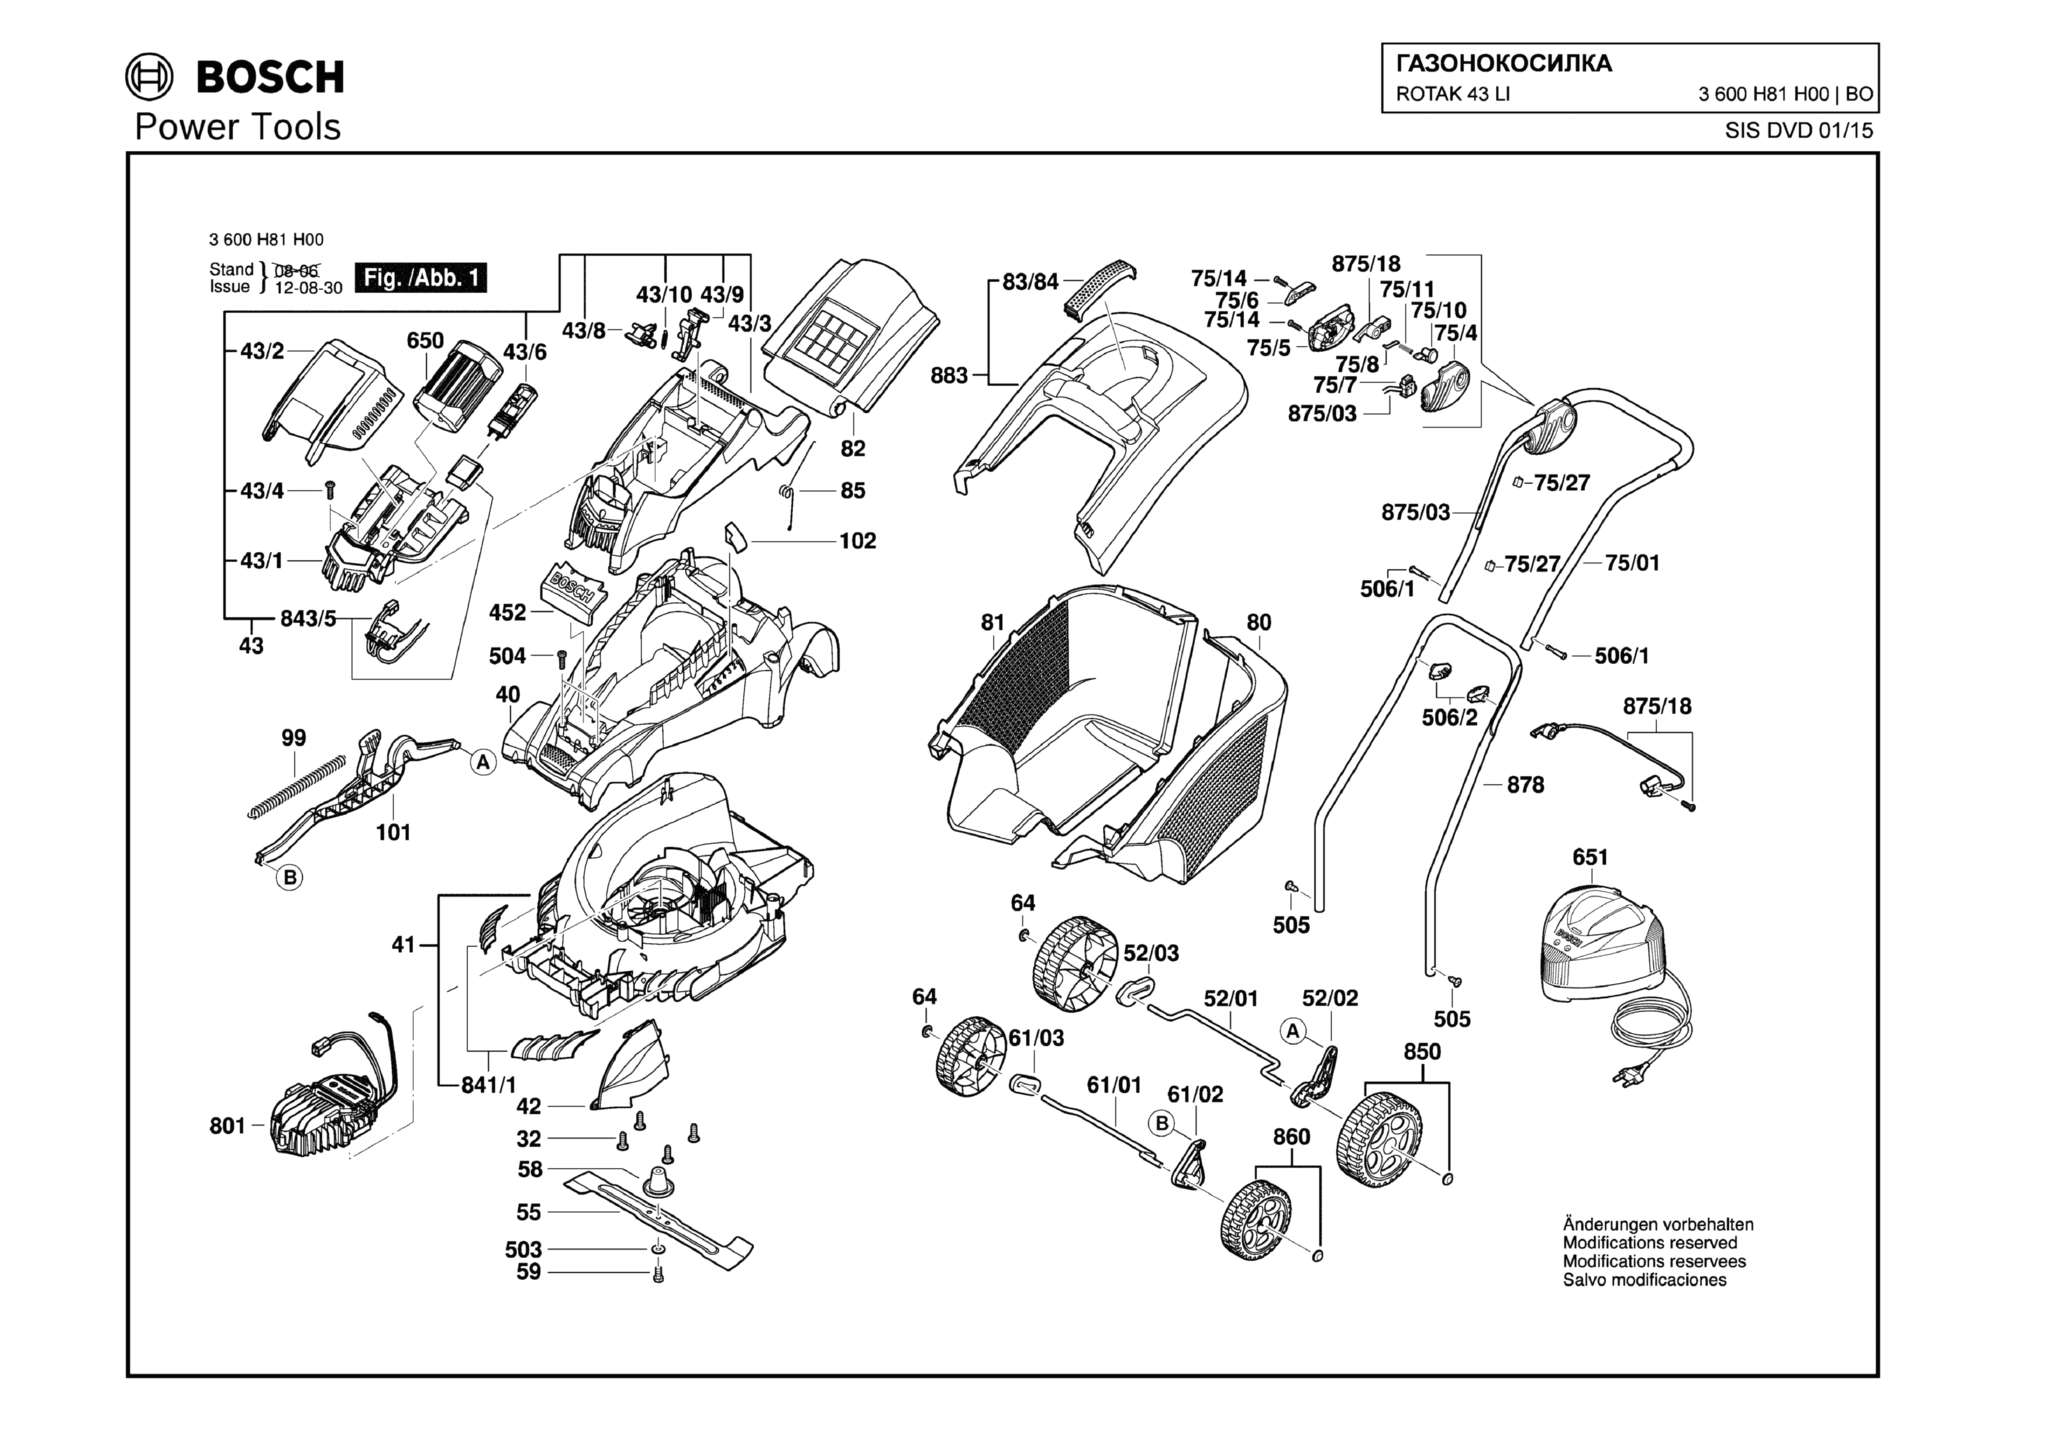 Запчасти, схема и деталировка Bosch ROTAK 43 LI (ТИП 3600HA4500) (ЧАСТЬ 2)